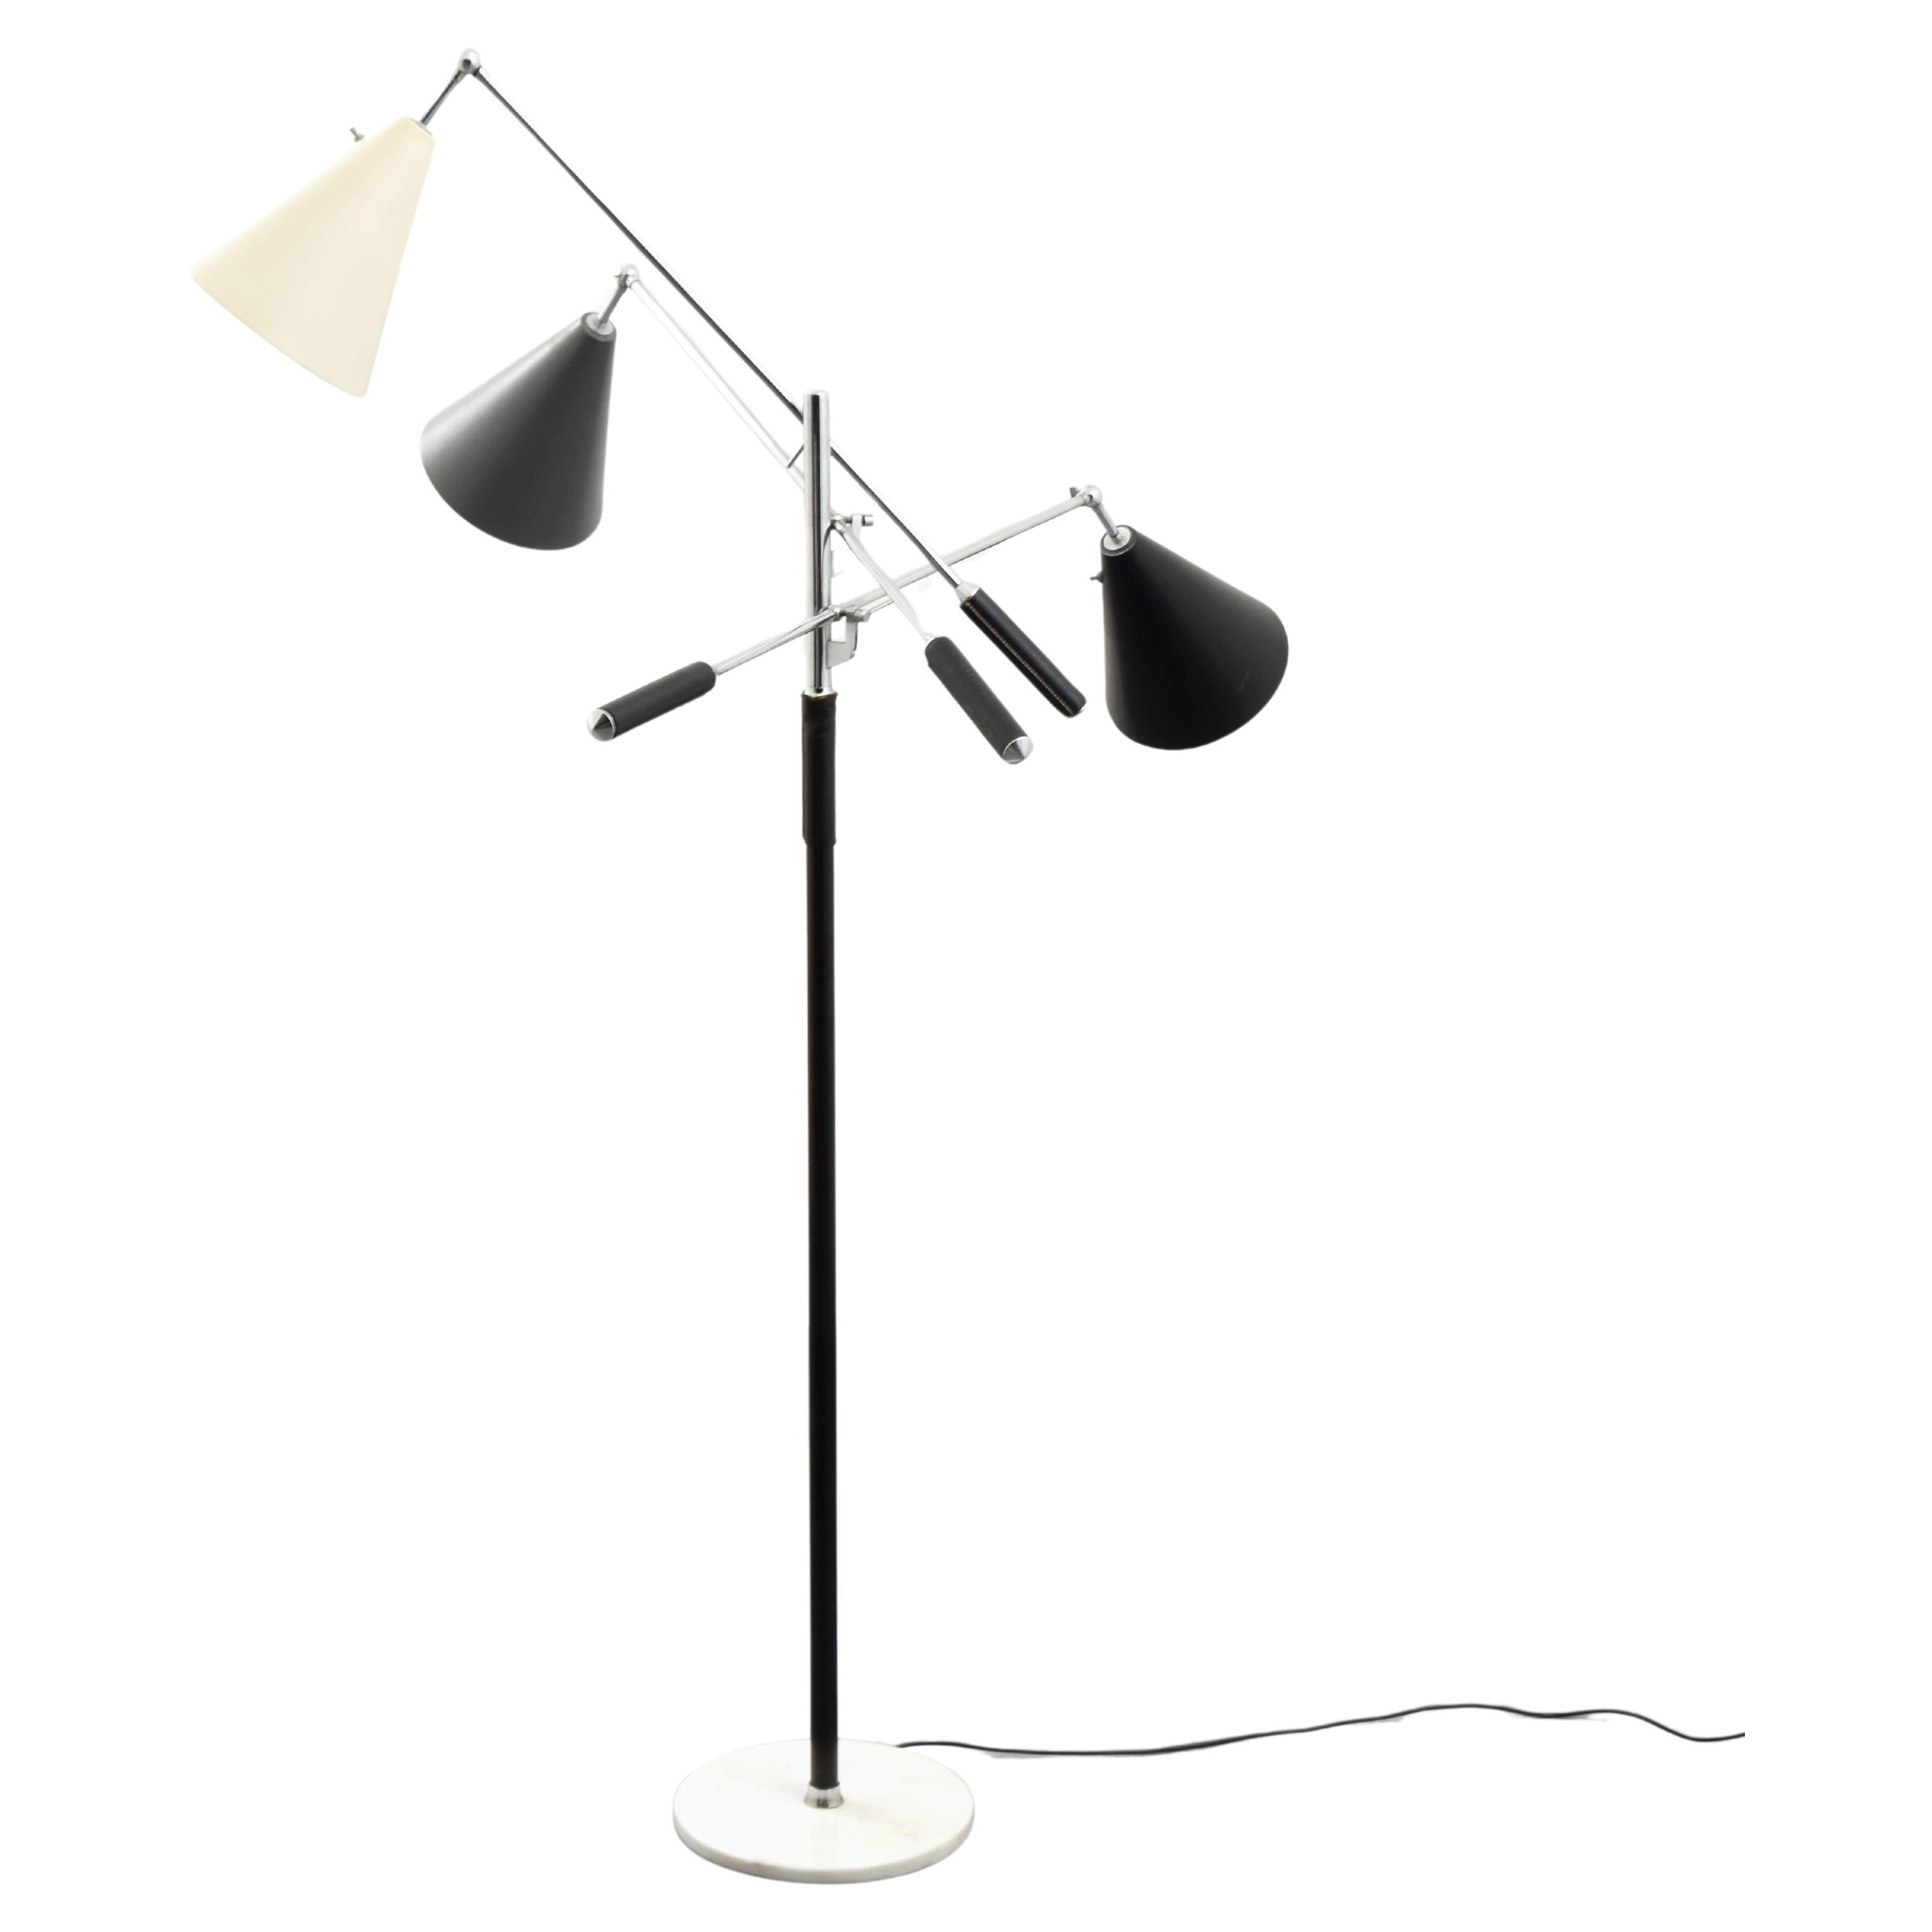 Arredoluce “Triennale” Floor Lamp For Sale